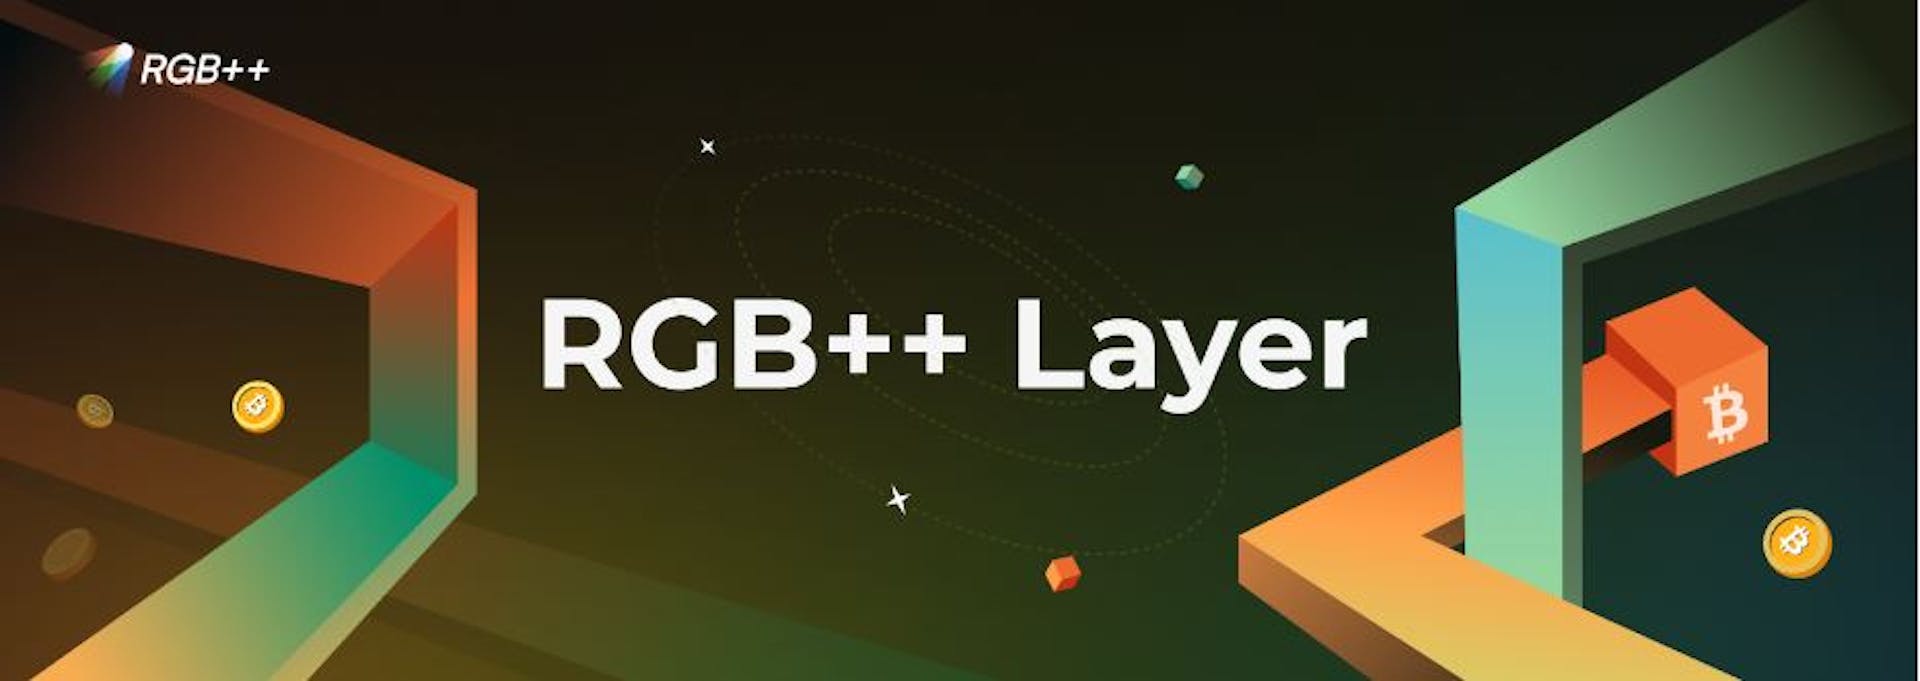 featured image - Lớp RGB++: Chuyển đổi Bitcoin bằng cách phát hành tài sản, hợp đồng thông minh và khả năng tương tác